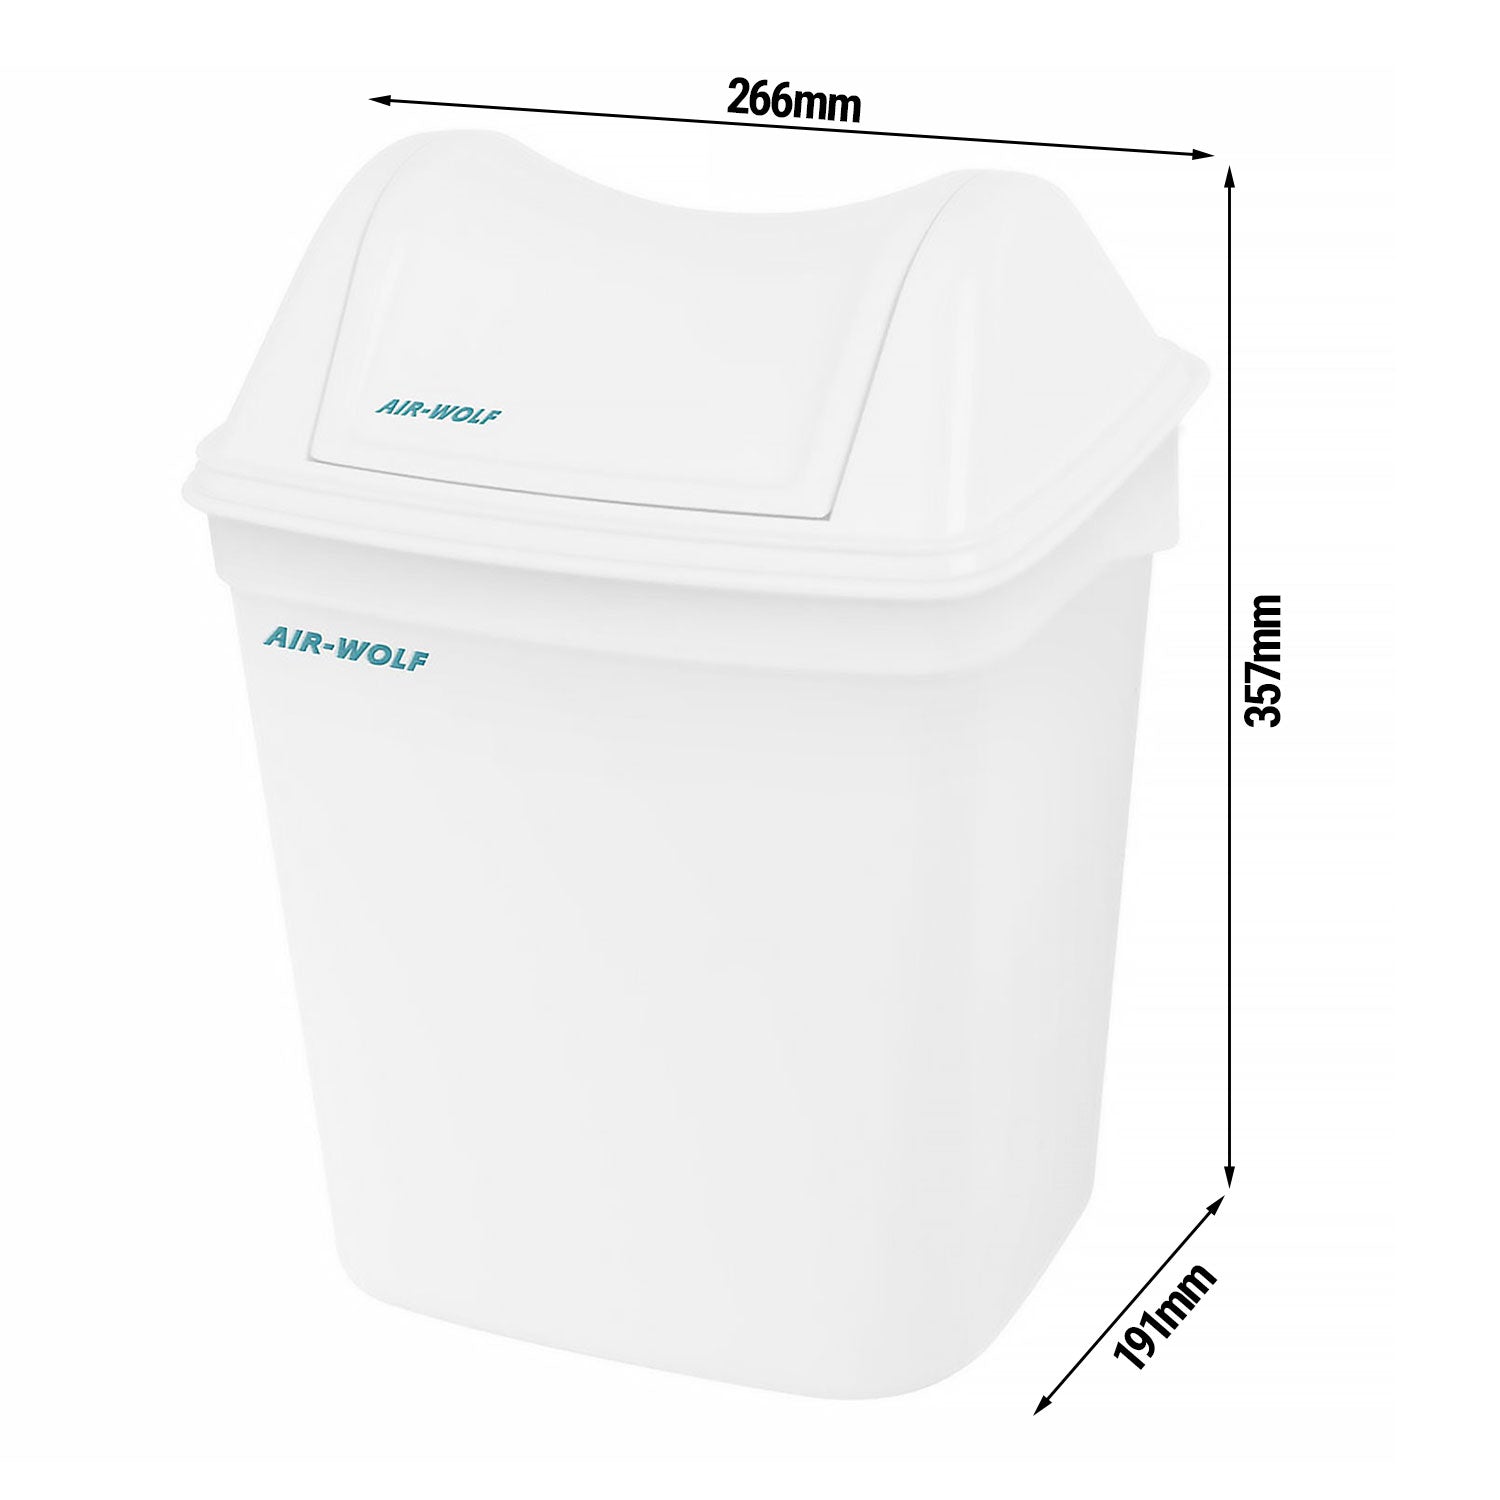 AIR-WOLF | Хигиеничен контейнер за отпадъци с капак - 8 литра - ABS пластмаса - бял